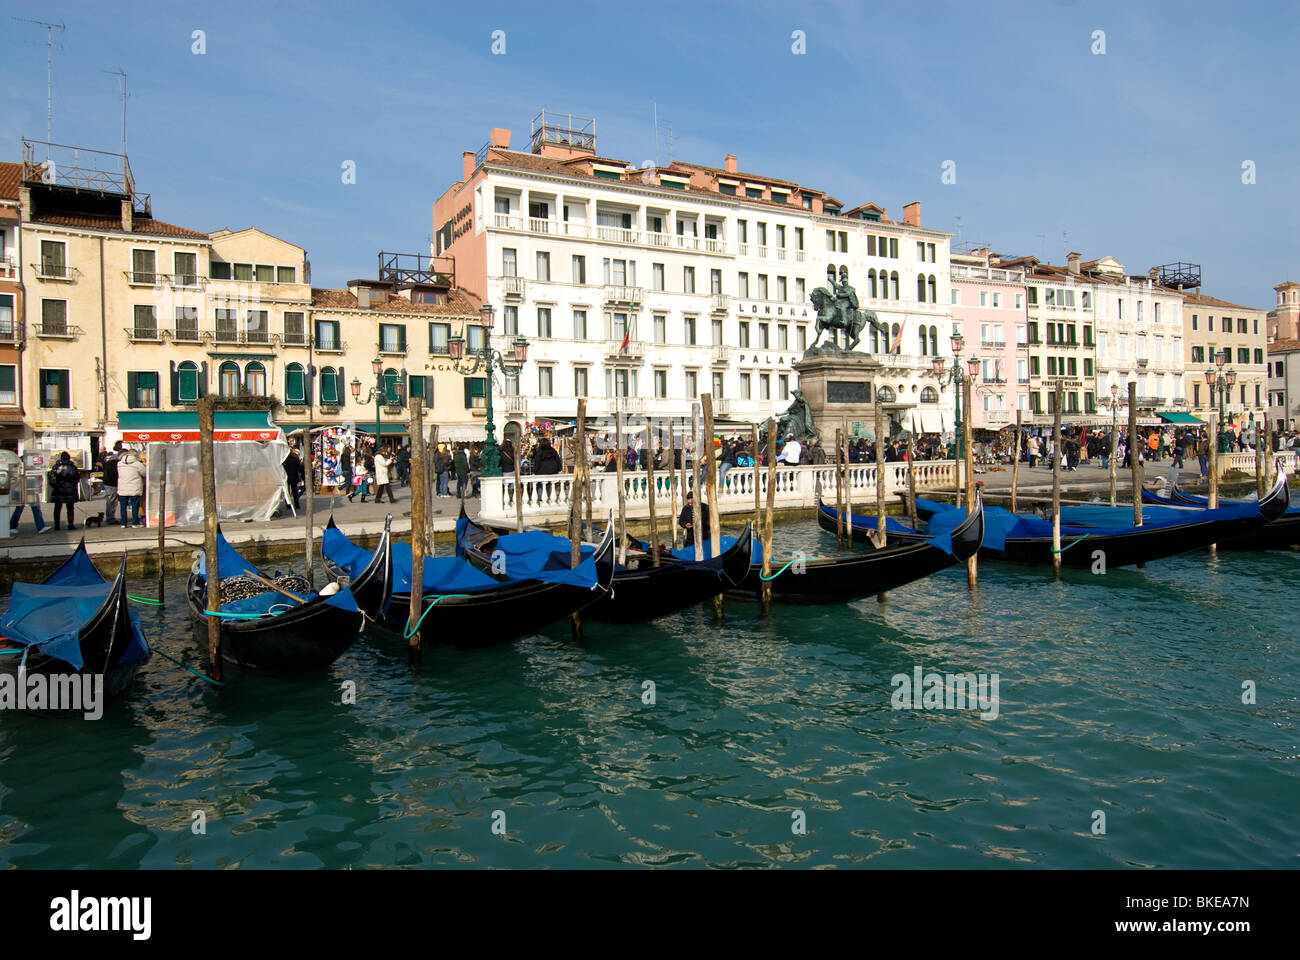 Gondolas moored along the Zaccaria, Venice, Italy Stock Photo